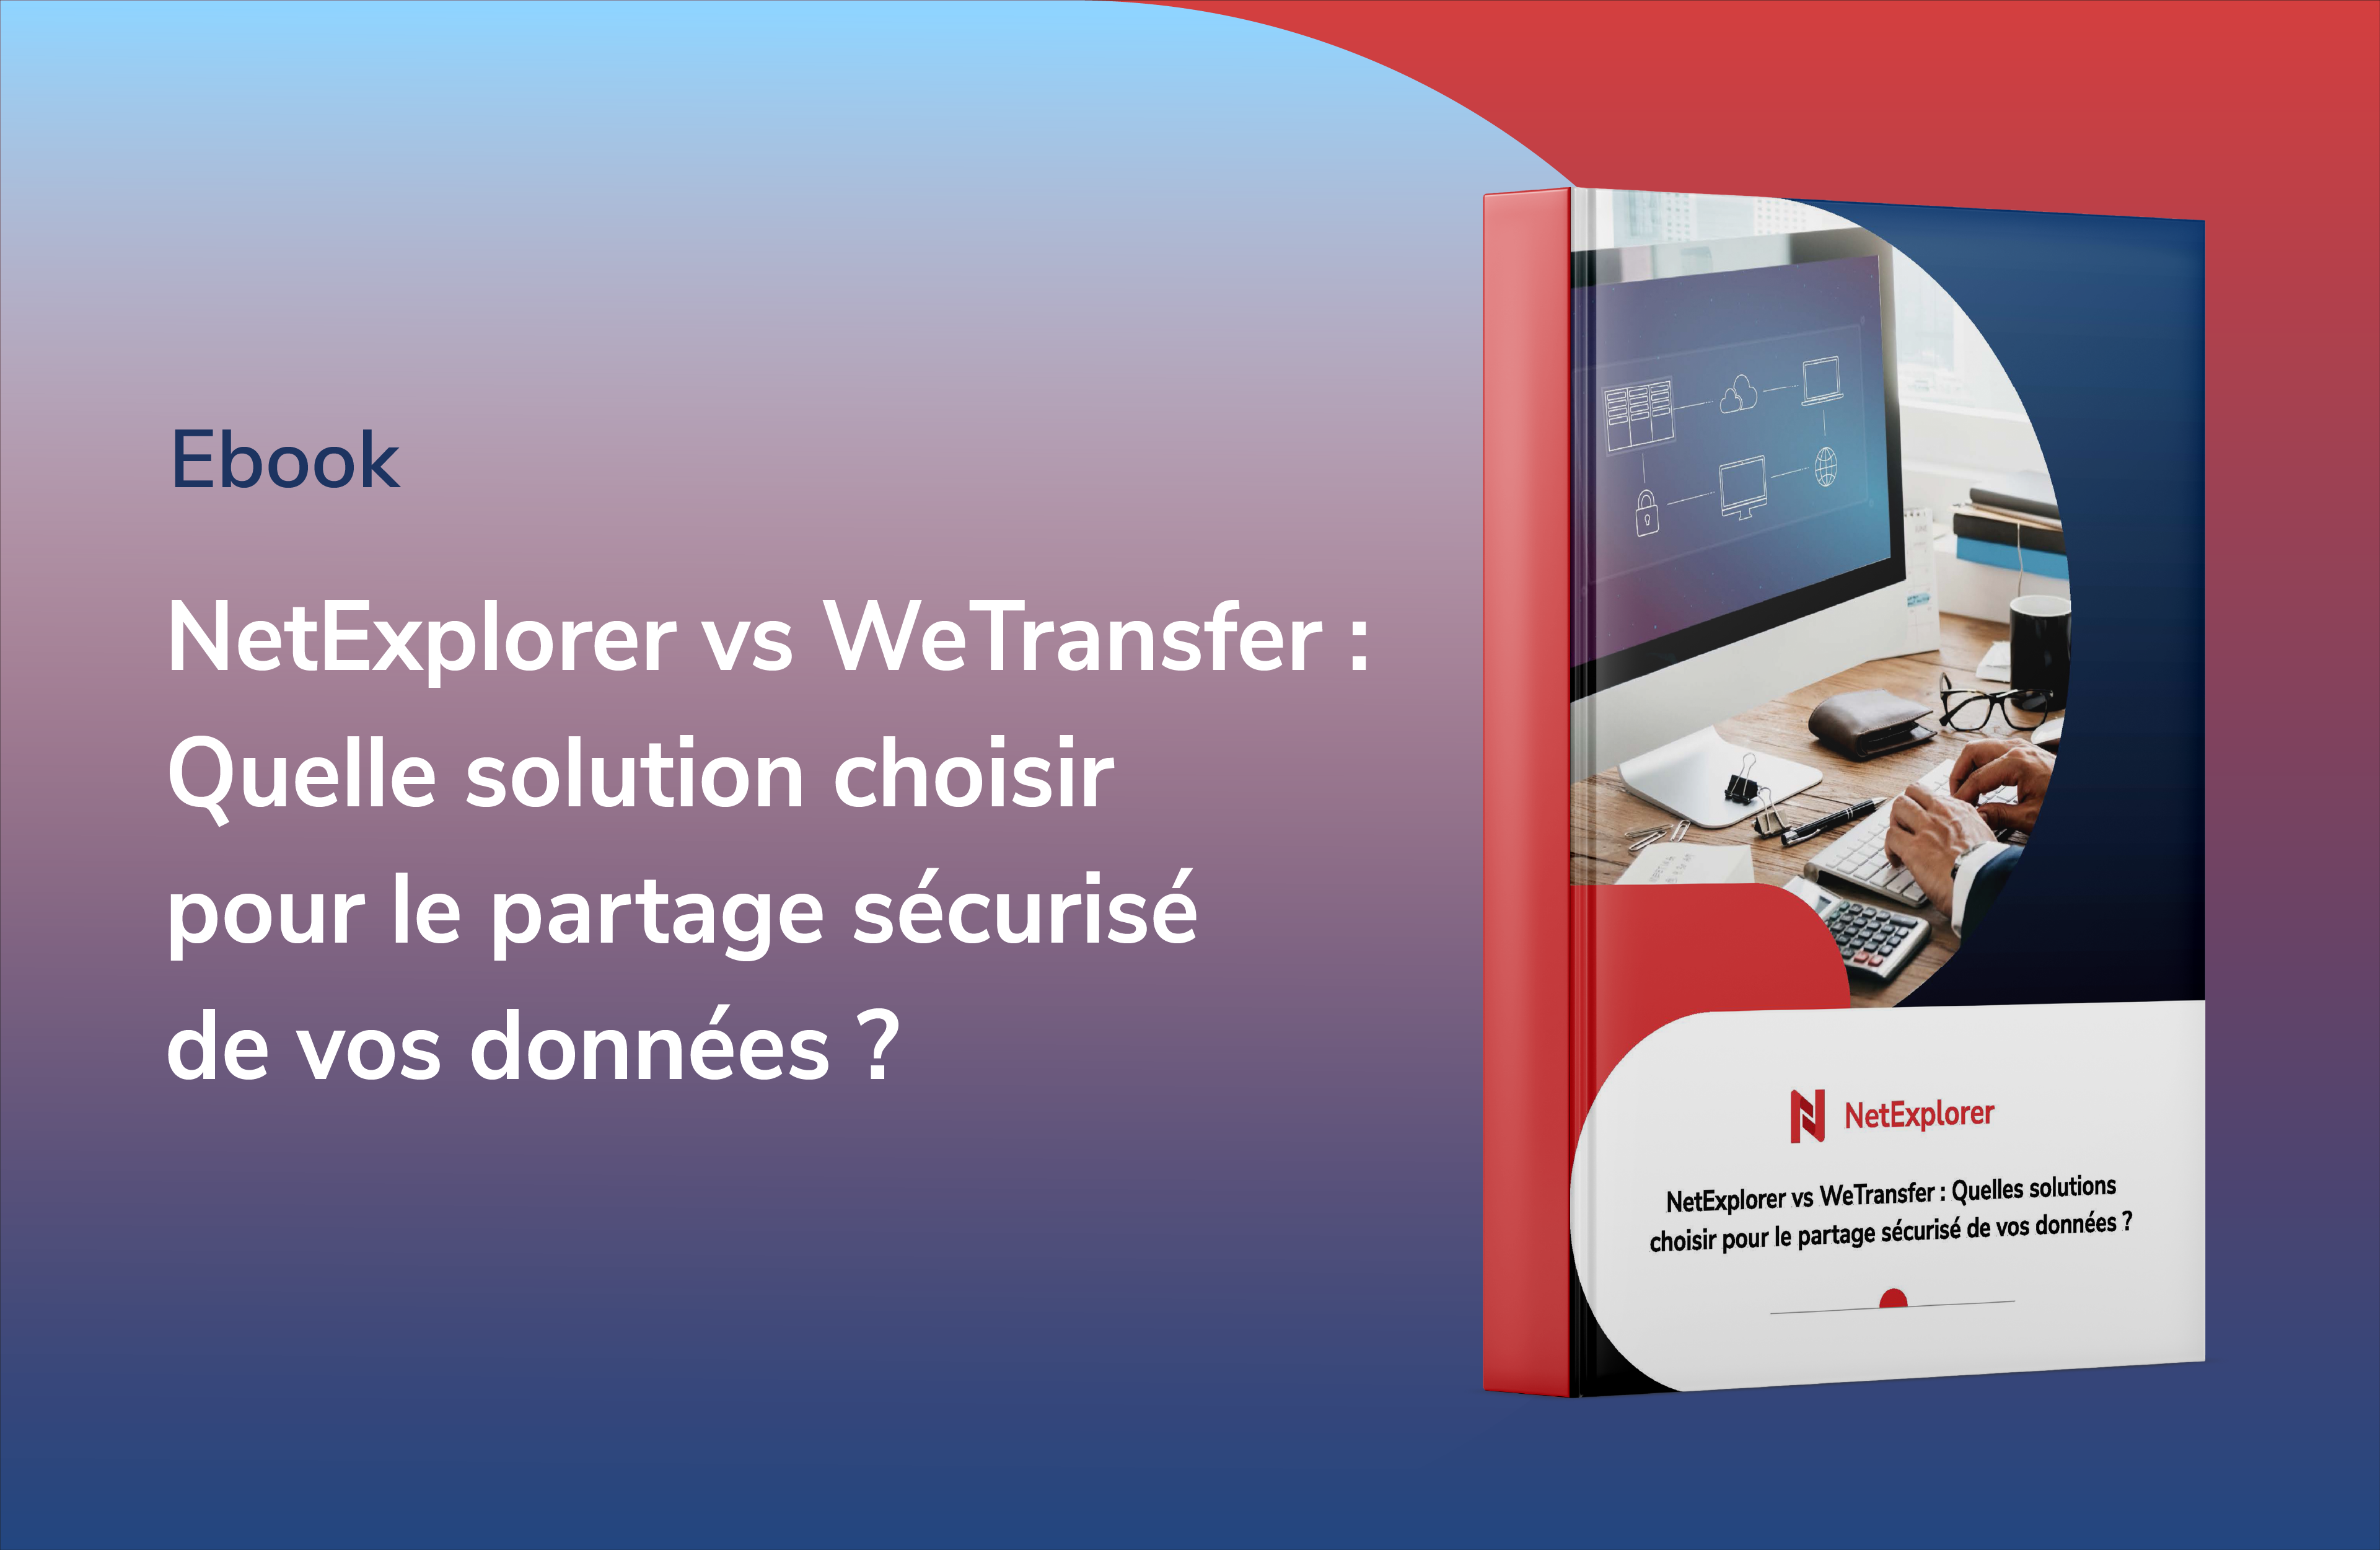 E-book d'analyse des solutions NetExplorer et WeTransfer